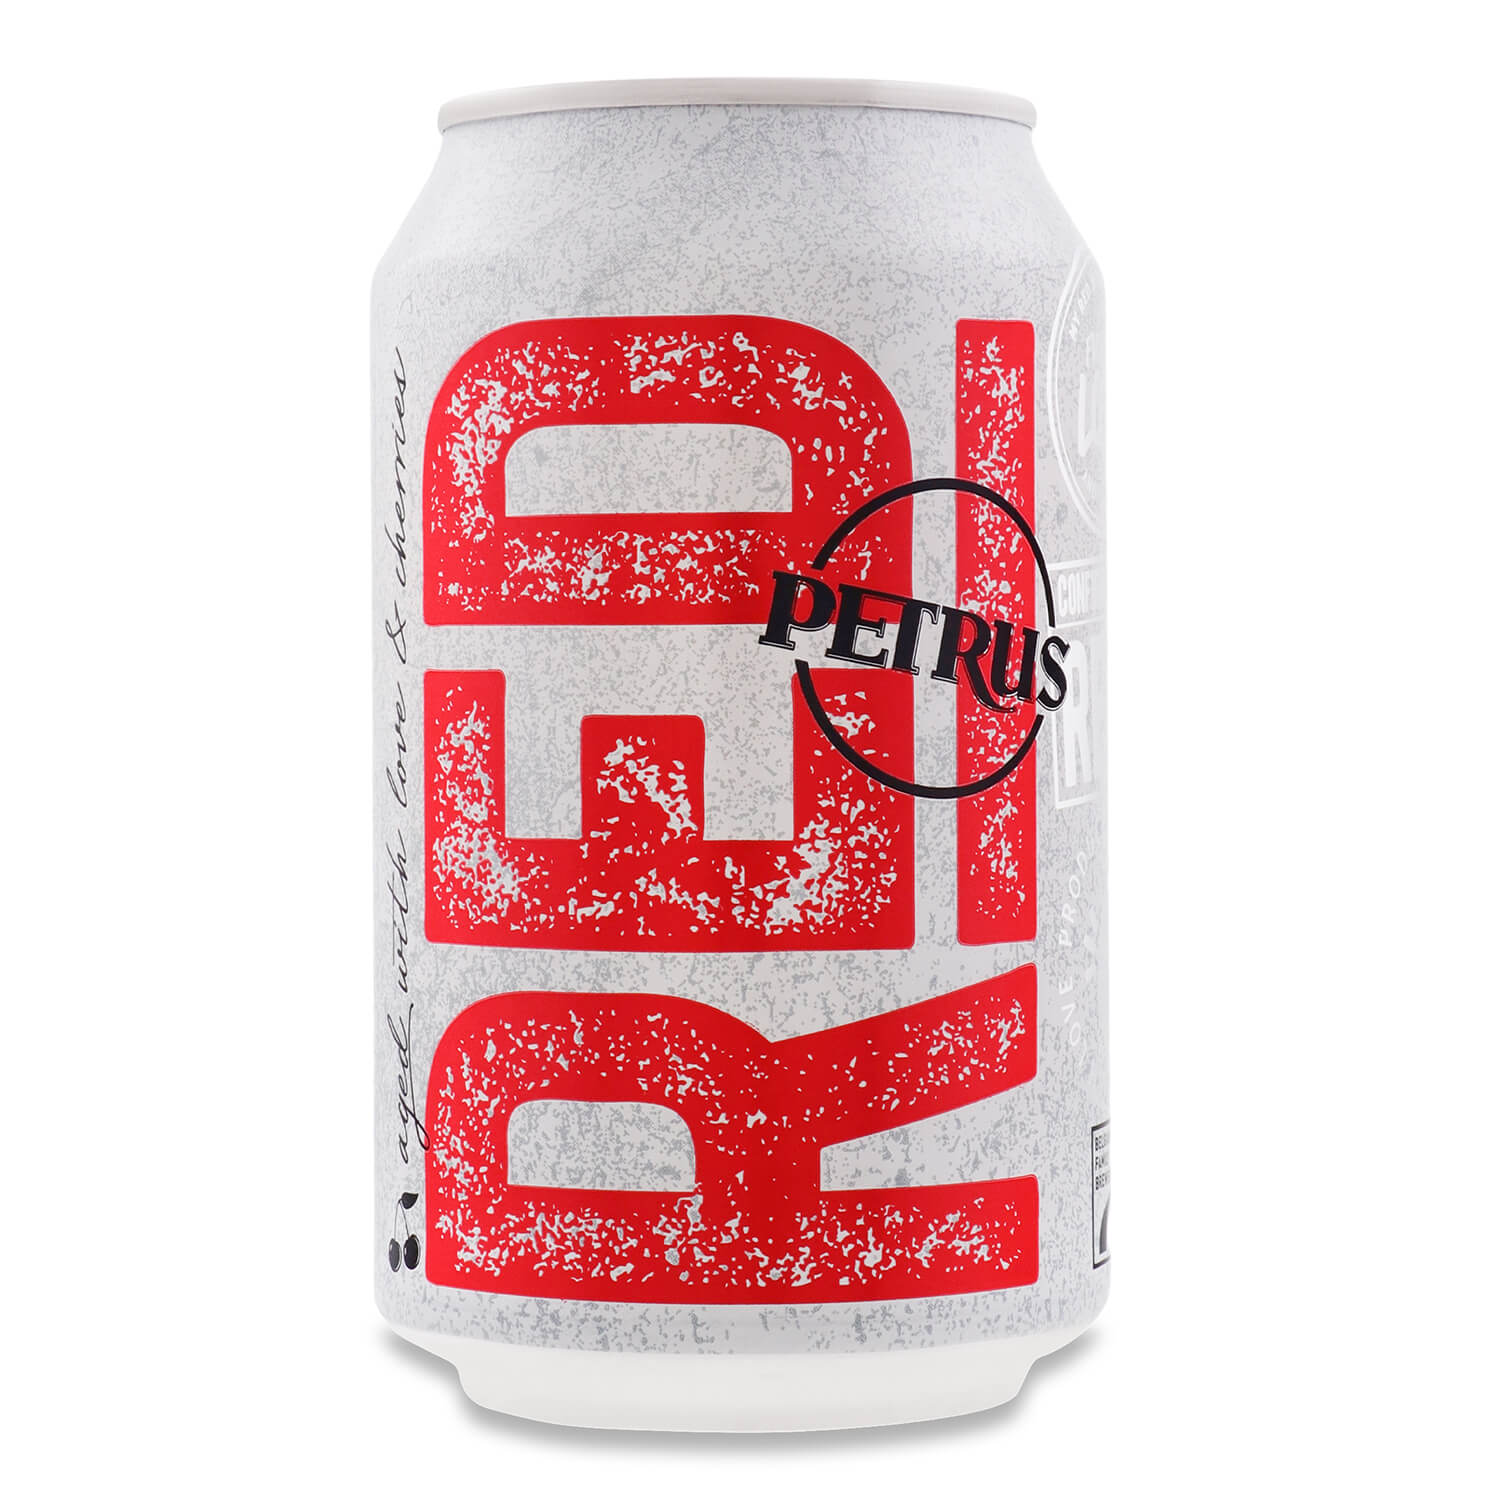 Пиво Petrus Red фруктовое, 8,5%, ж/б, 0,33 л (868217) - фото 1